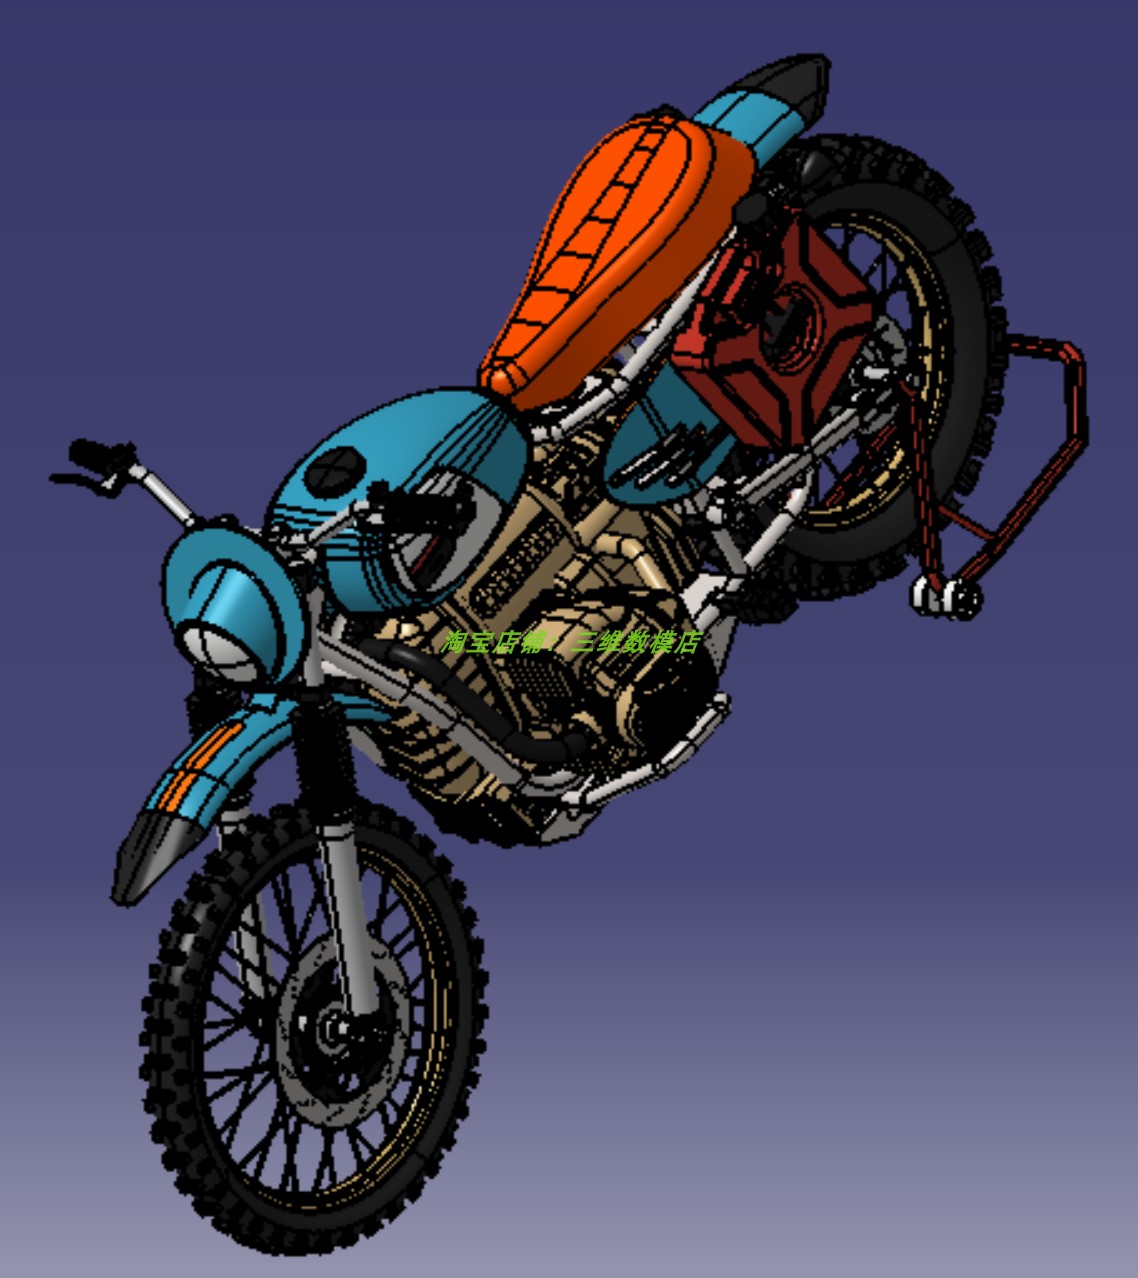 2两轮汽油摩托车3D三维几何数模型简化外观造型油箱骨架车轮胎stp